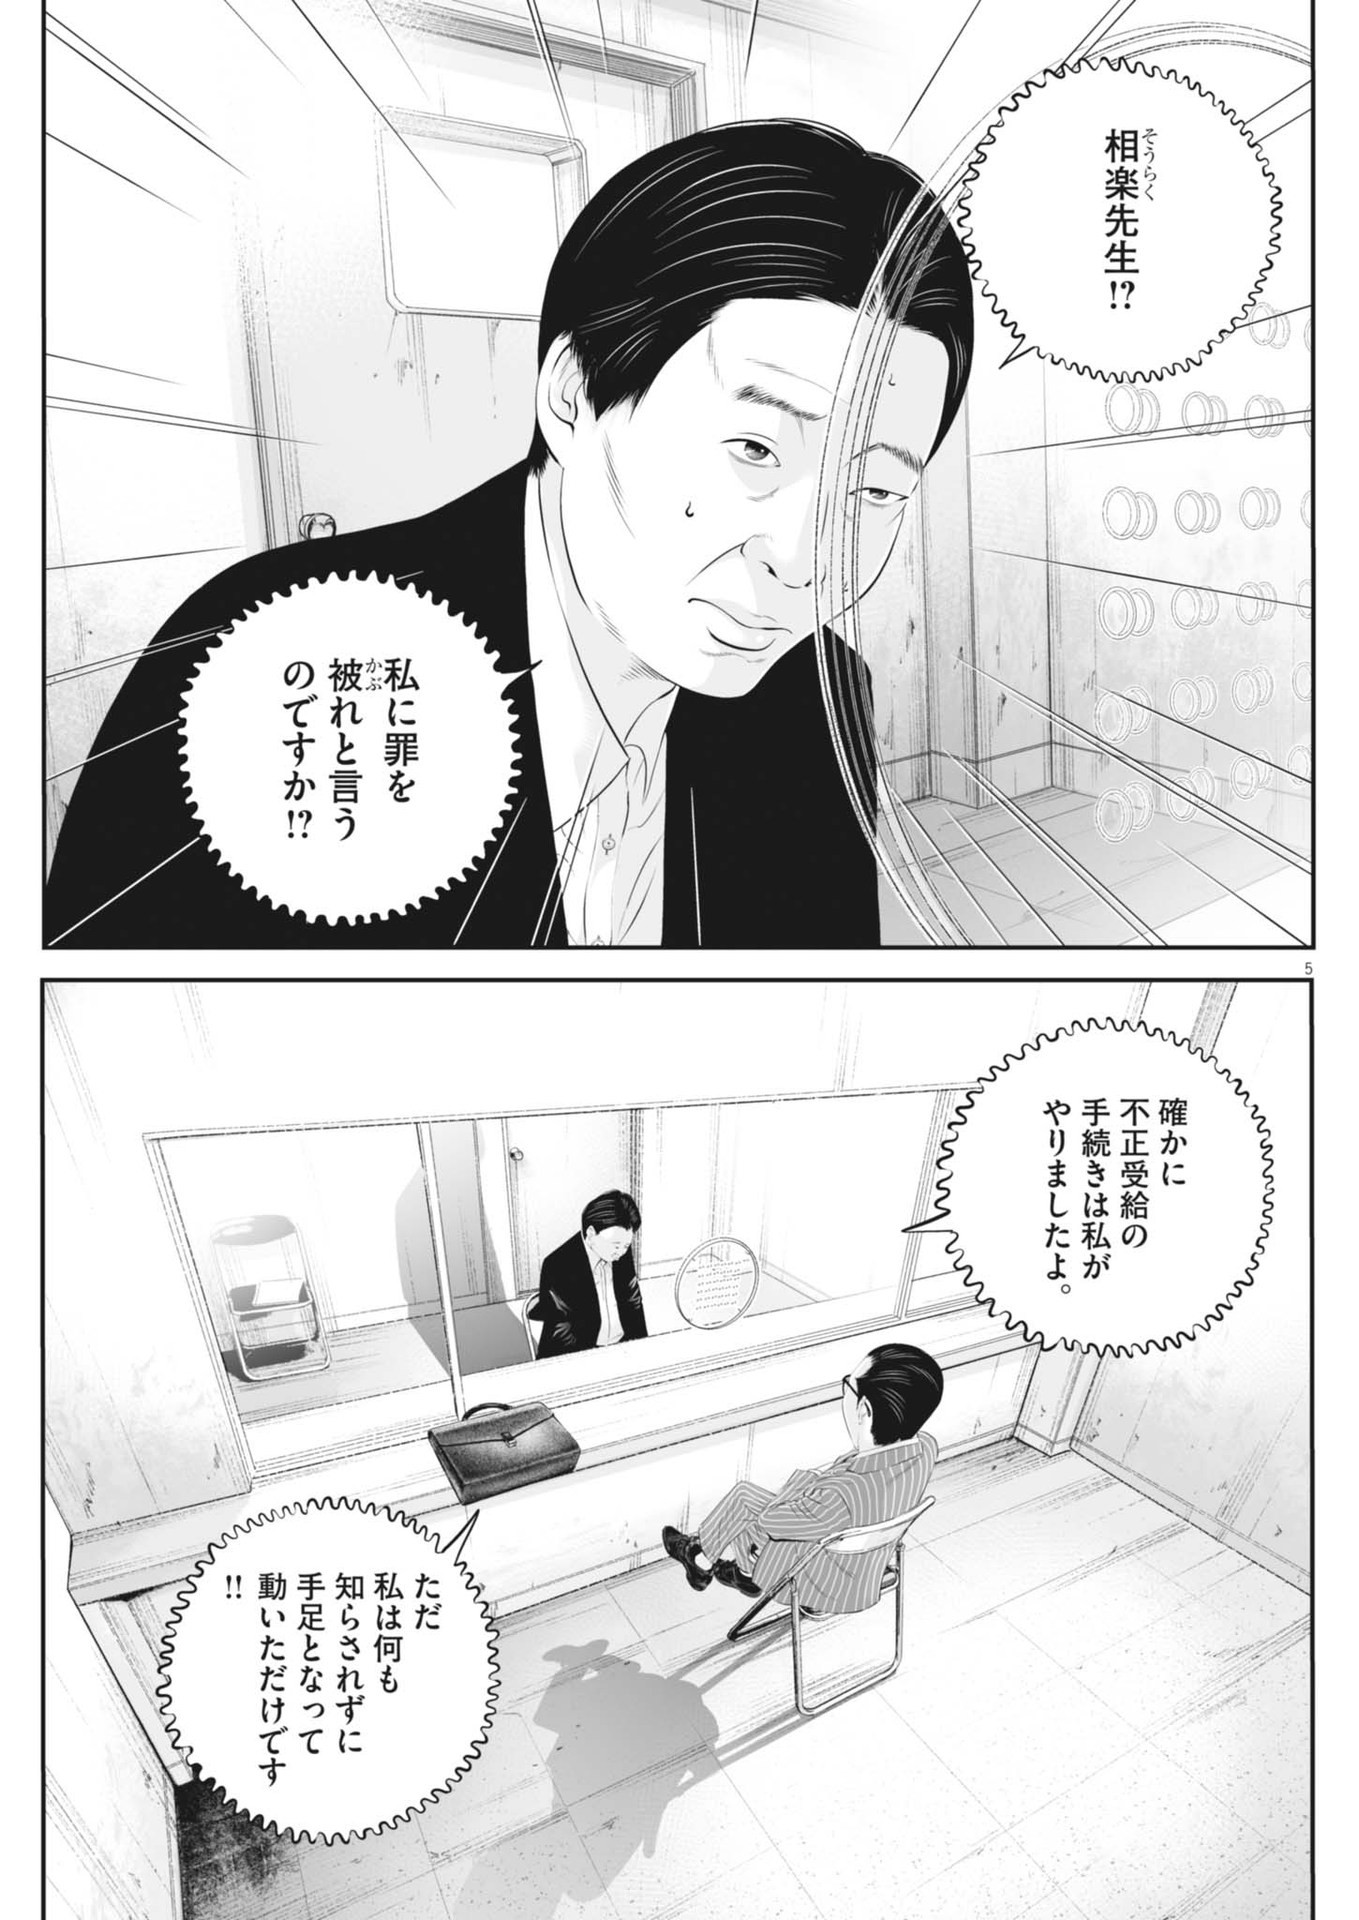 Kujou no Taizai - Chapter 103 - Page 5